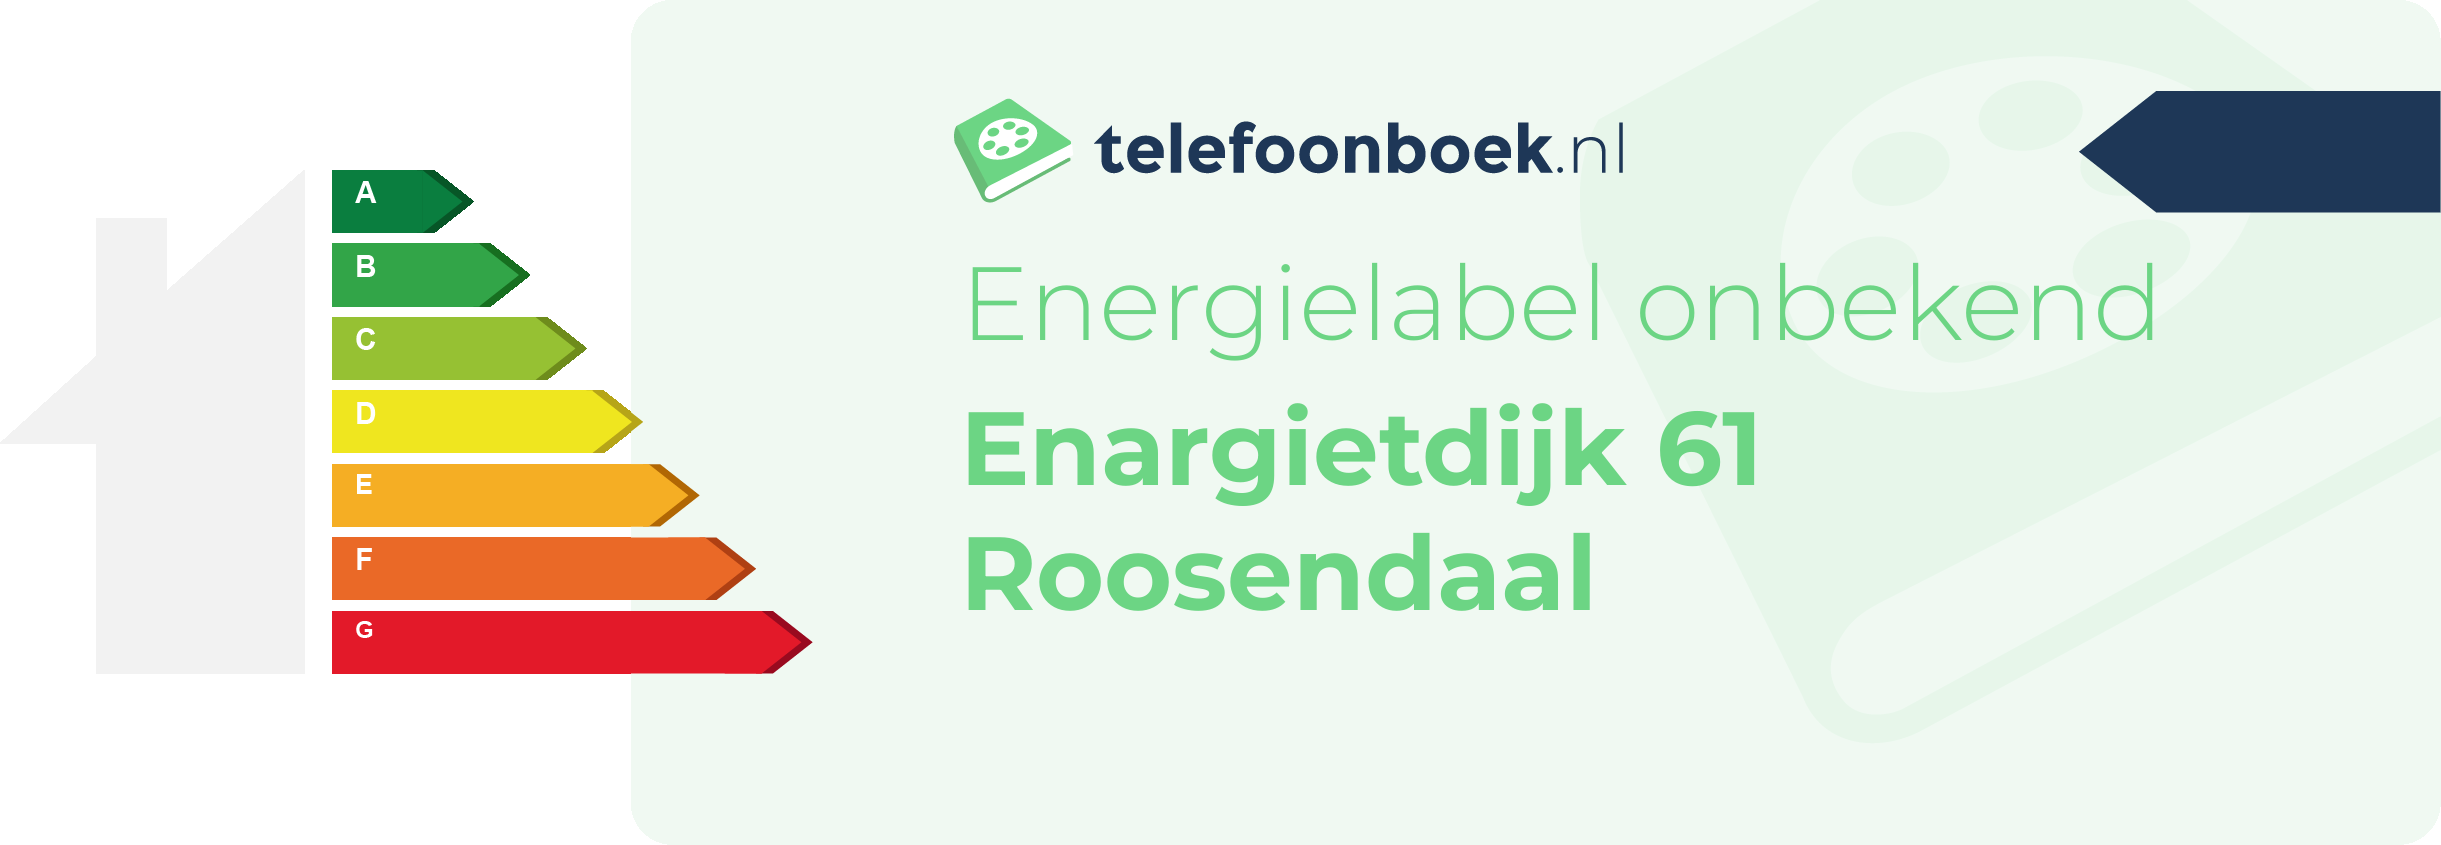 Energielabel Enargietdijk 61 Roosendaal